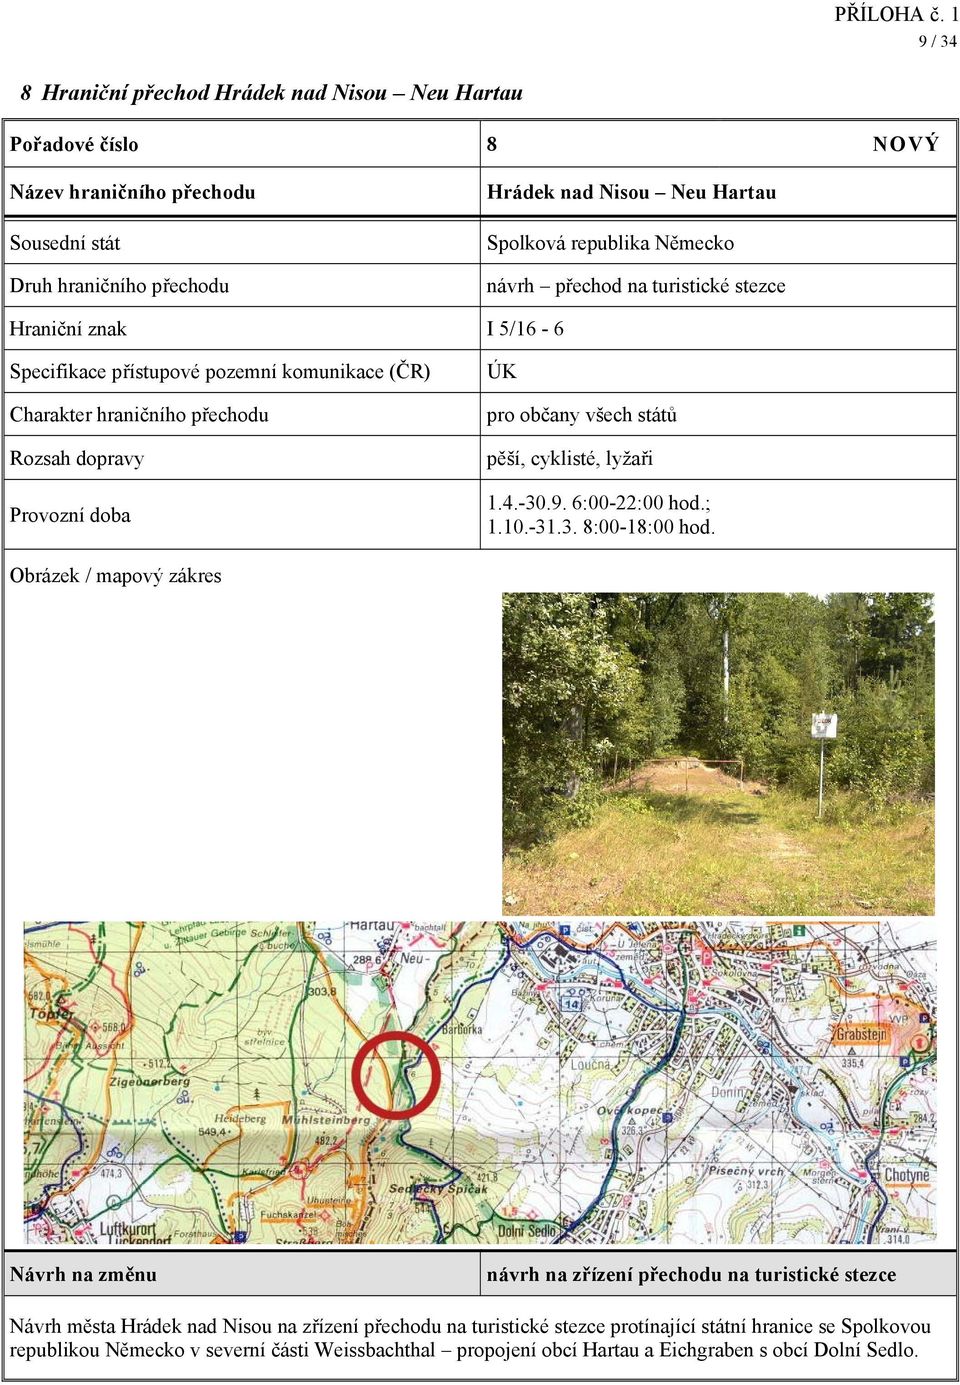 Obrázek / mapový zákres návrh na zřízení přechodu na turistické stezce Návrh města Hrádek nad Nisou na zřízení přechodu na turistické